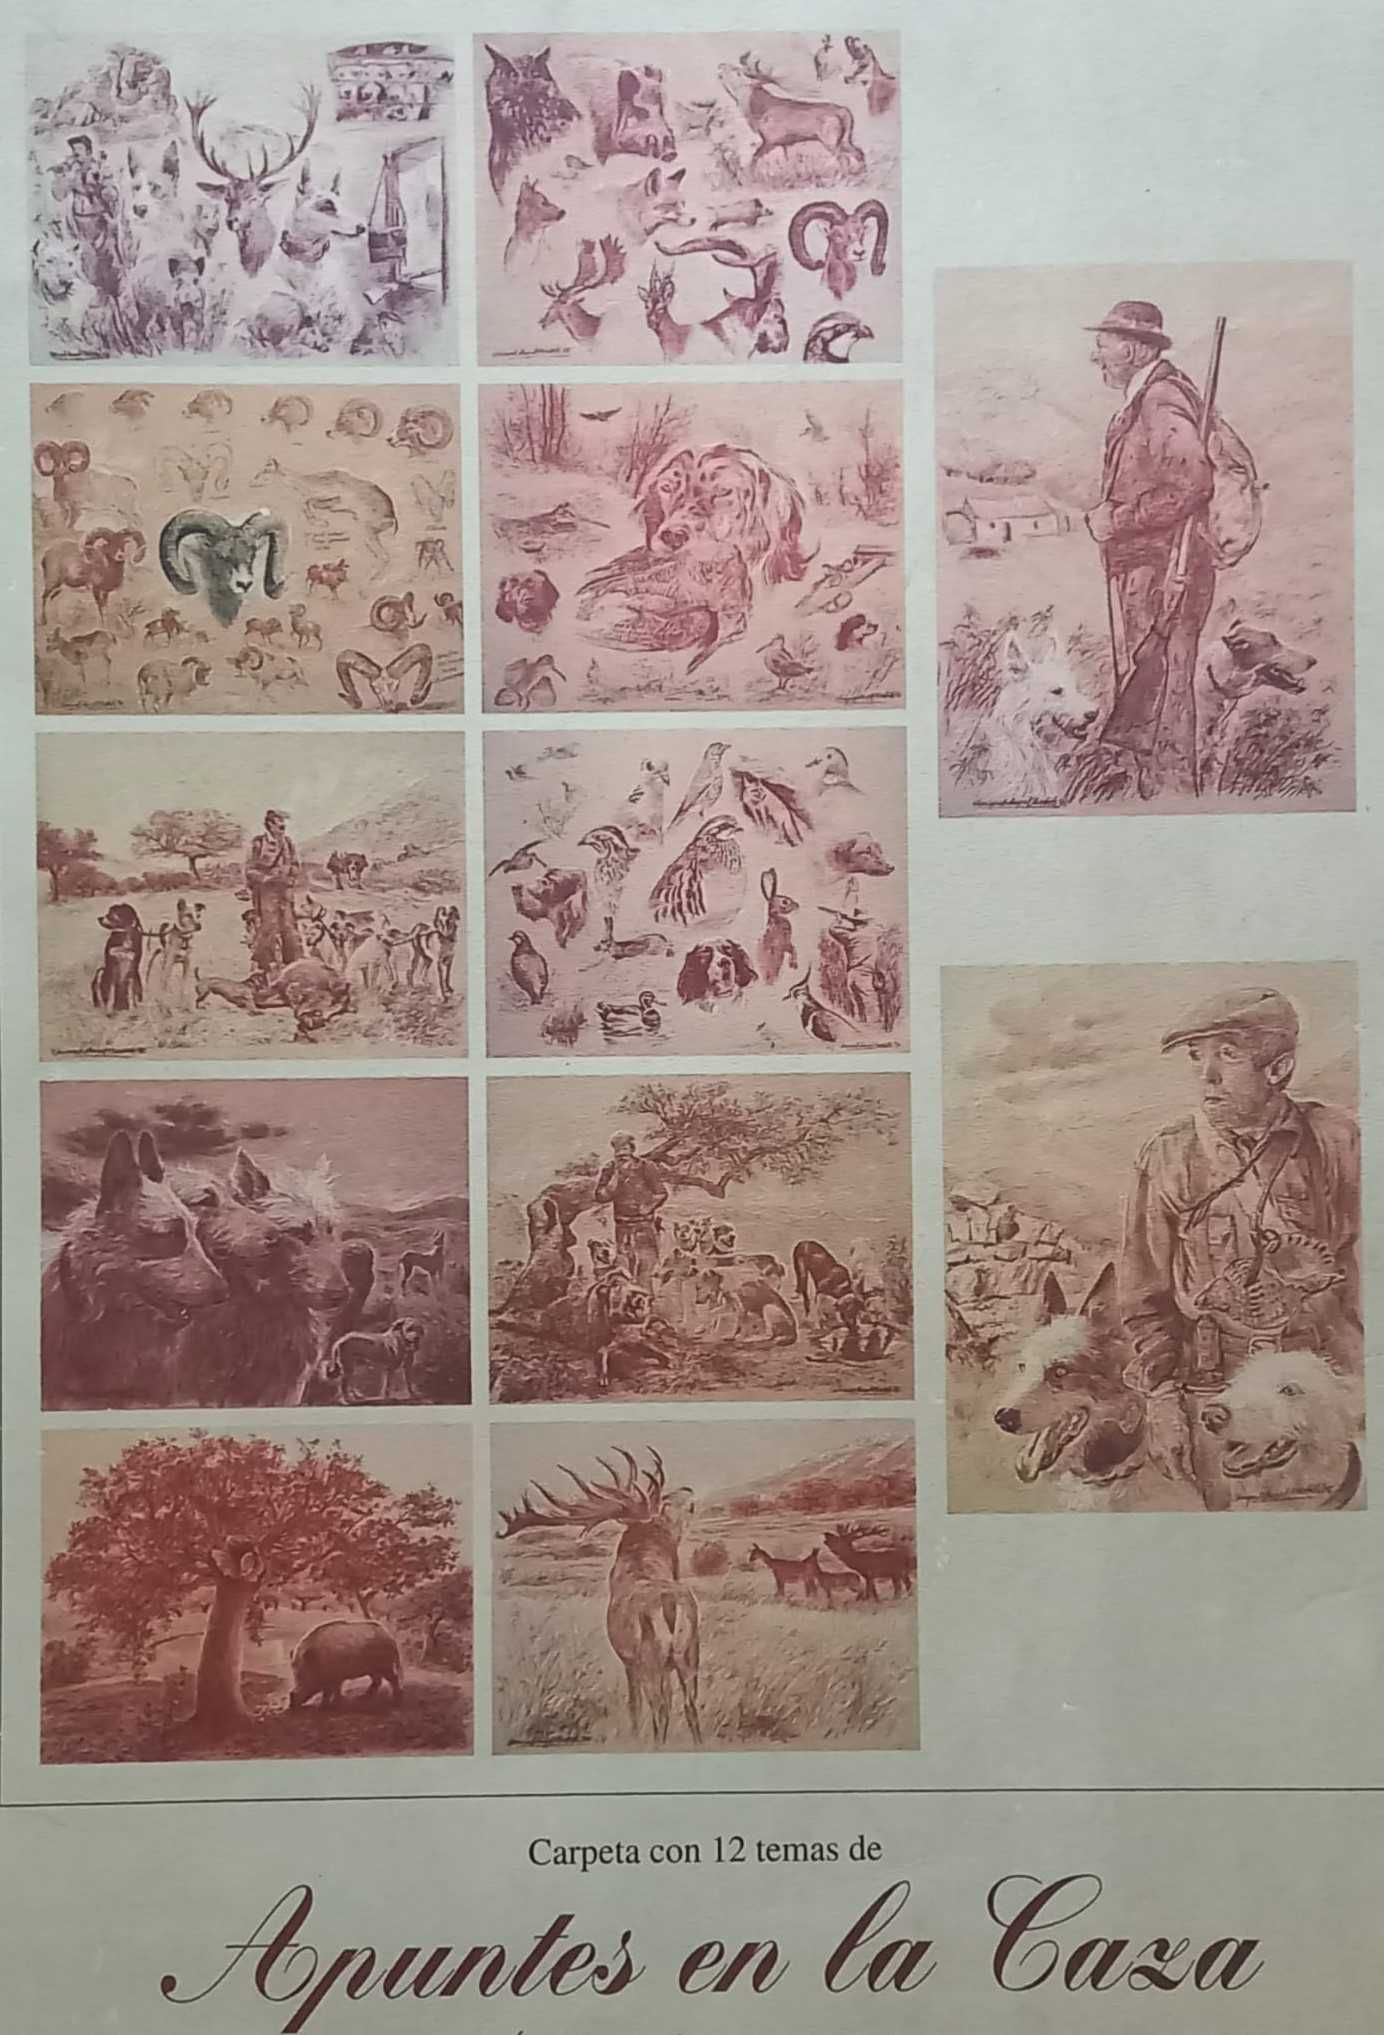 Coleção Serigrafias: "Apuntes en la caza", de Miguel Ángel Bedate - II